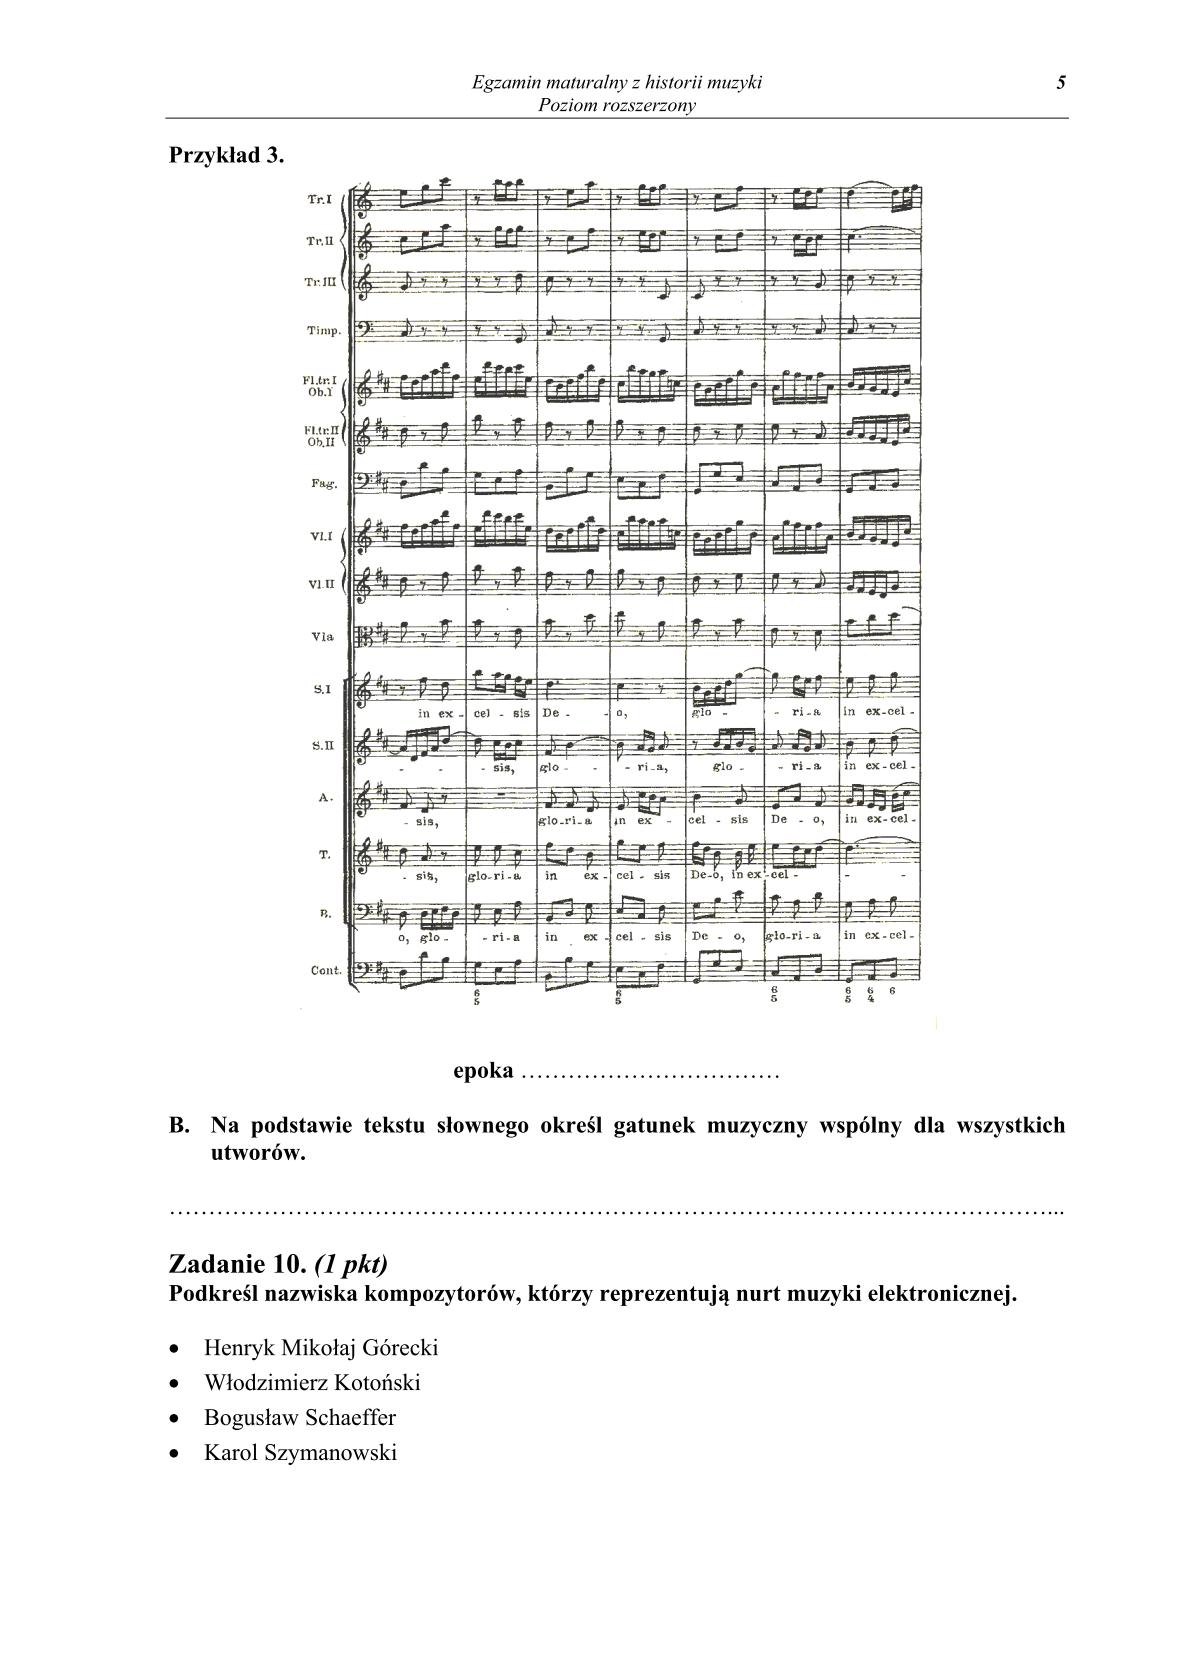 historia-muzyki-poziom-rozszerzony-matura-2014-str.5